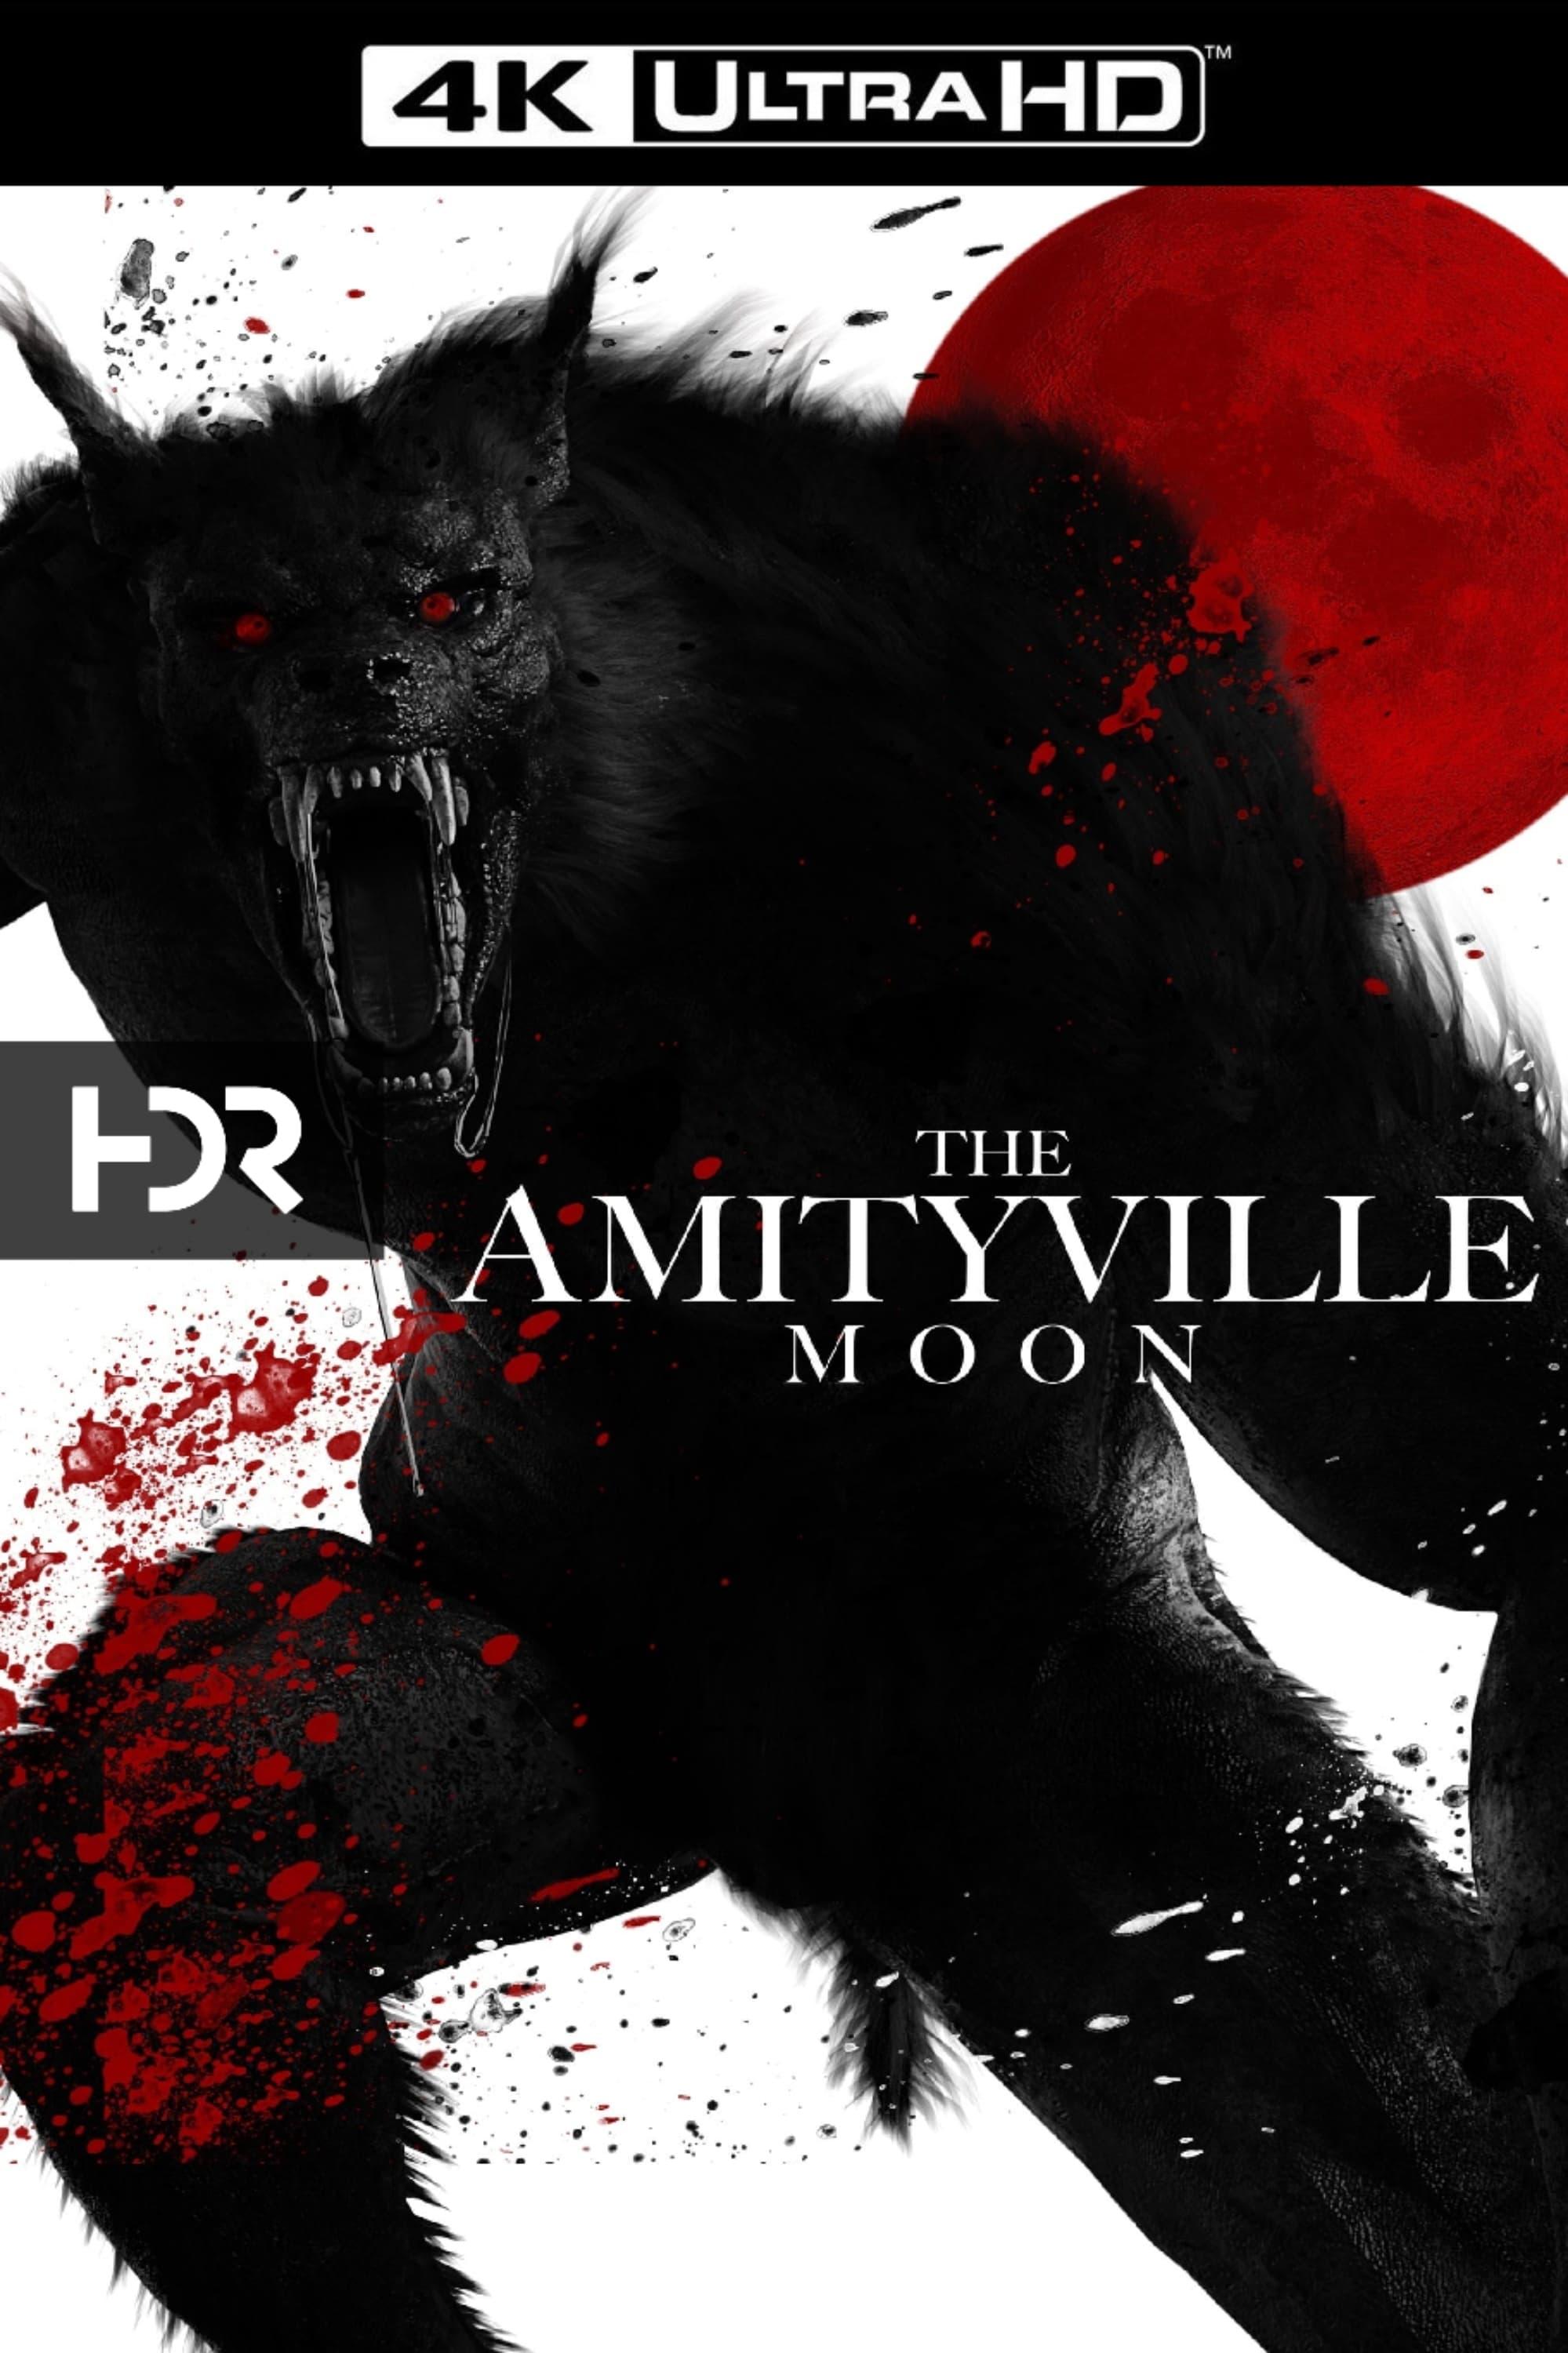 The Amityville Moon poster